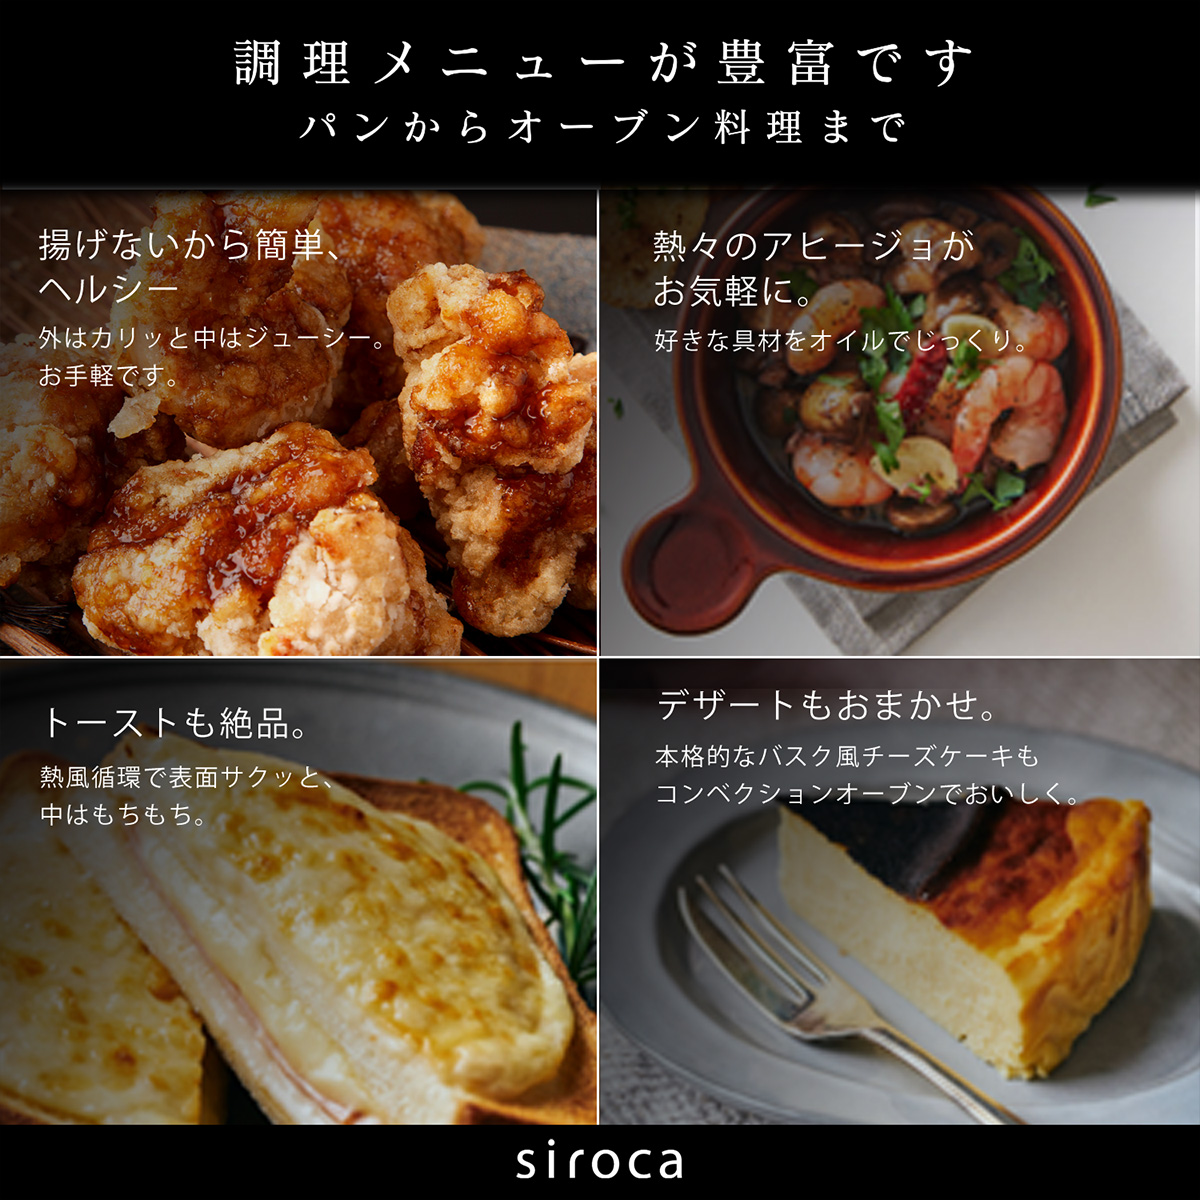 siroca ノンフライオーブン ノンフライ調理 16メニュー オーブン調理 トースト コンベクション コンパクト ホワイト